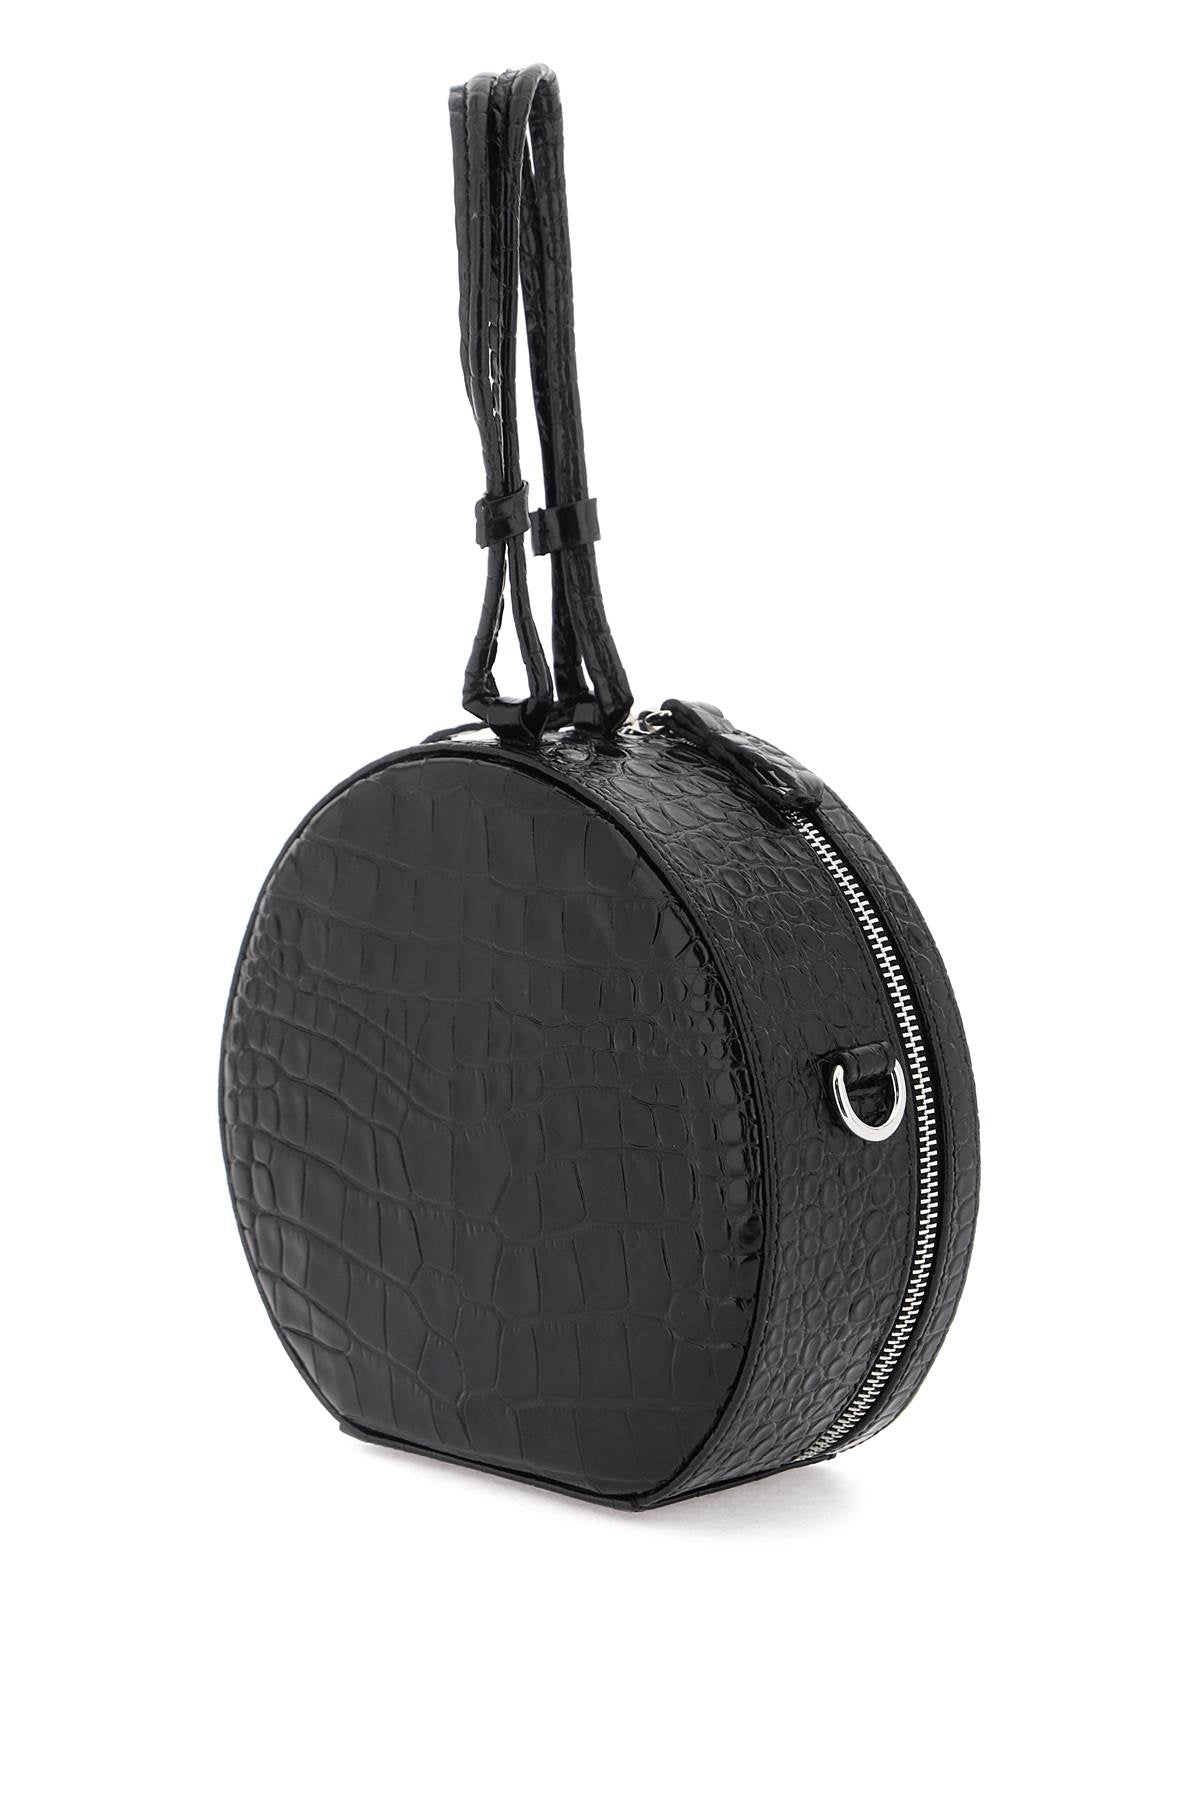 優雅圓形黑色鱷魚紋皮革手提袋